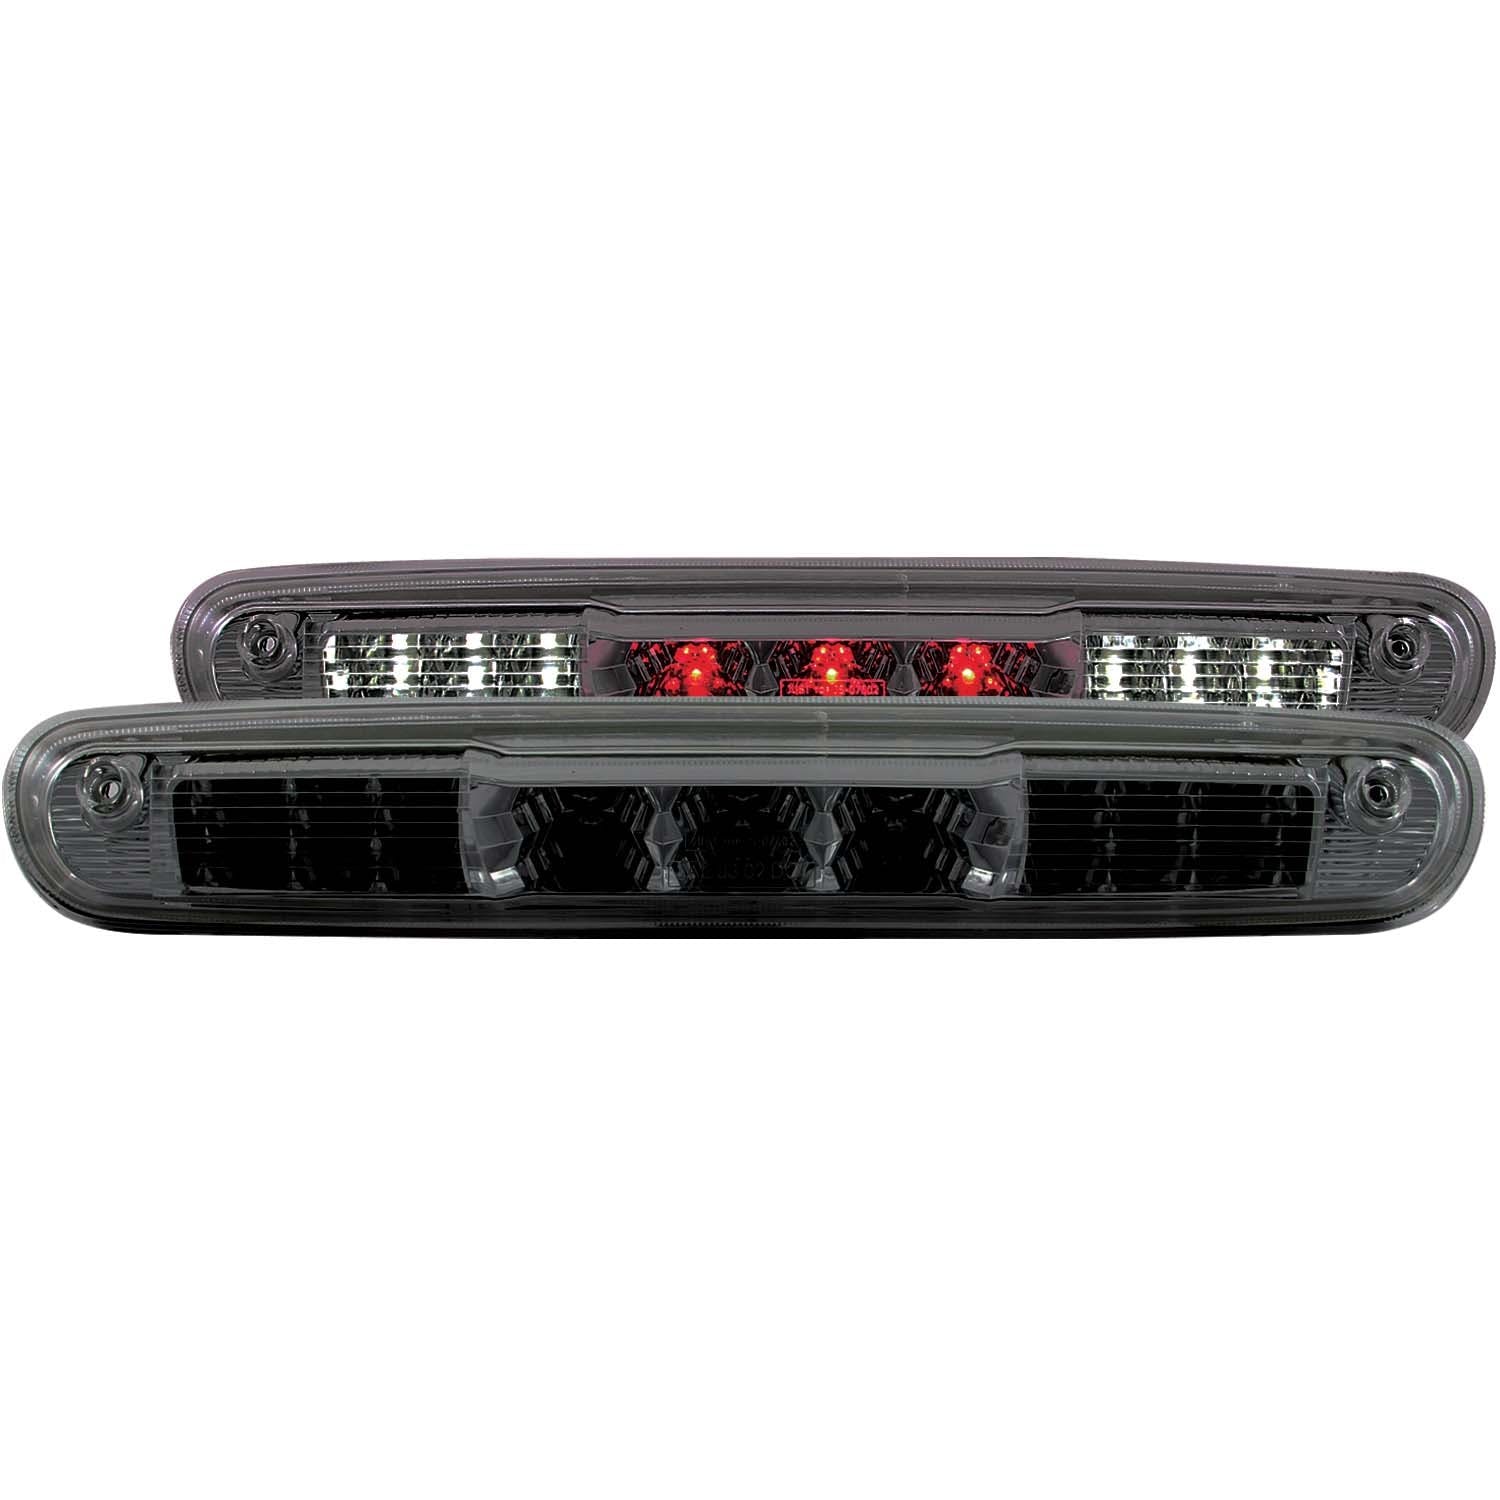 AnzoUSA 531067 LED 3rd Brake Light Smoke B - Series